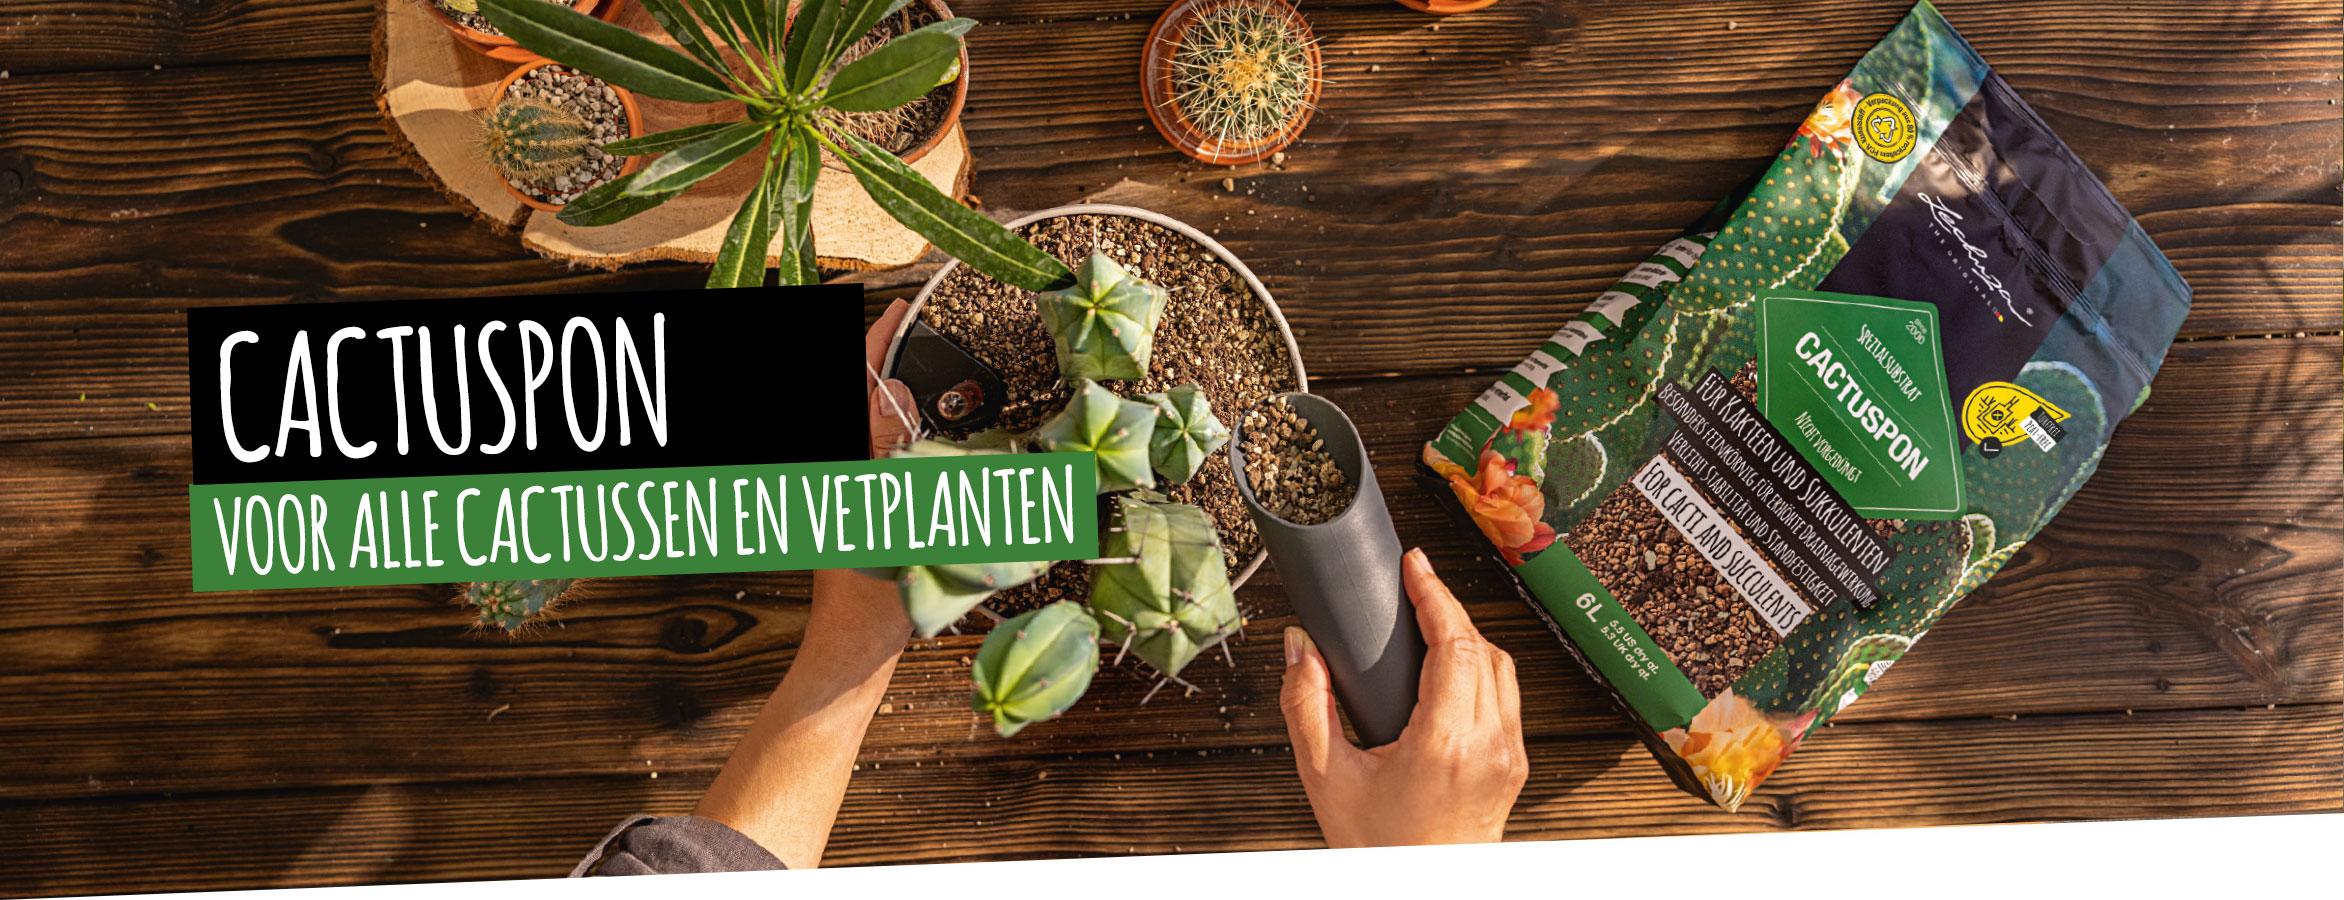 CACTUSPON: Voor alle cactussen en vetplanten